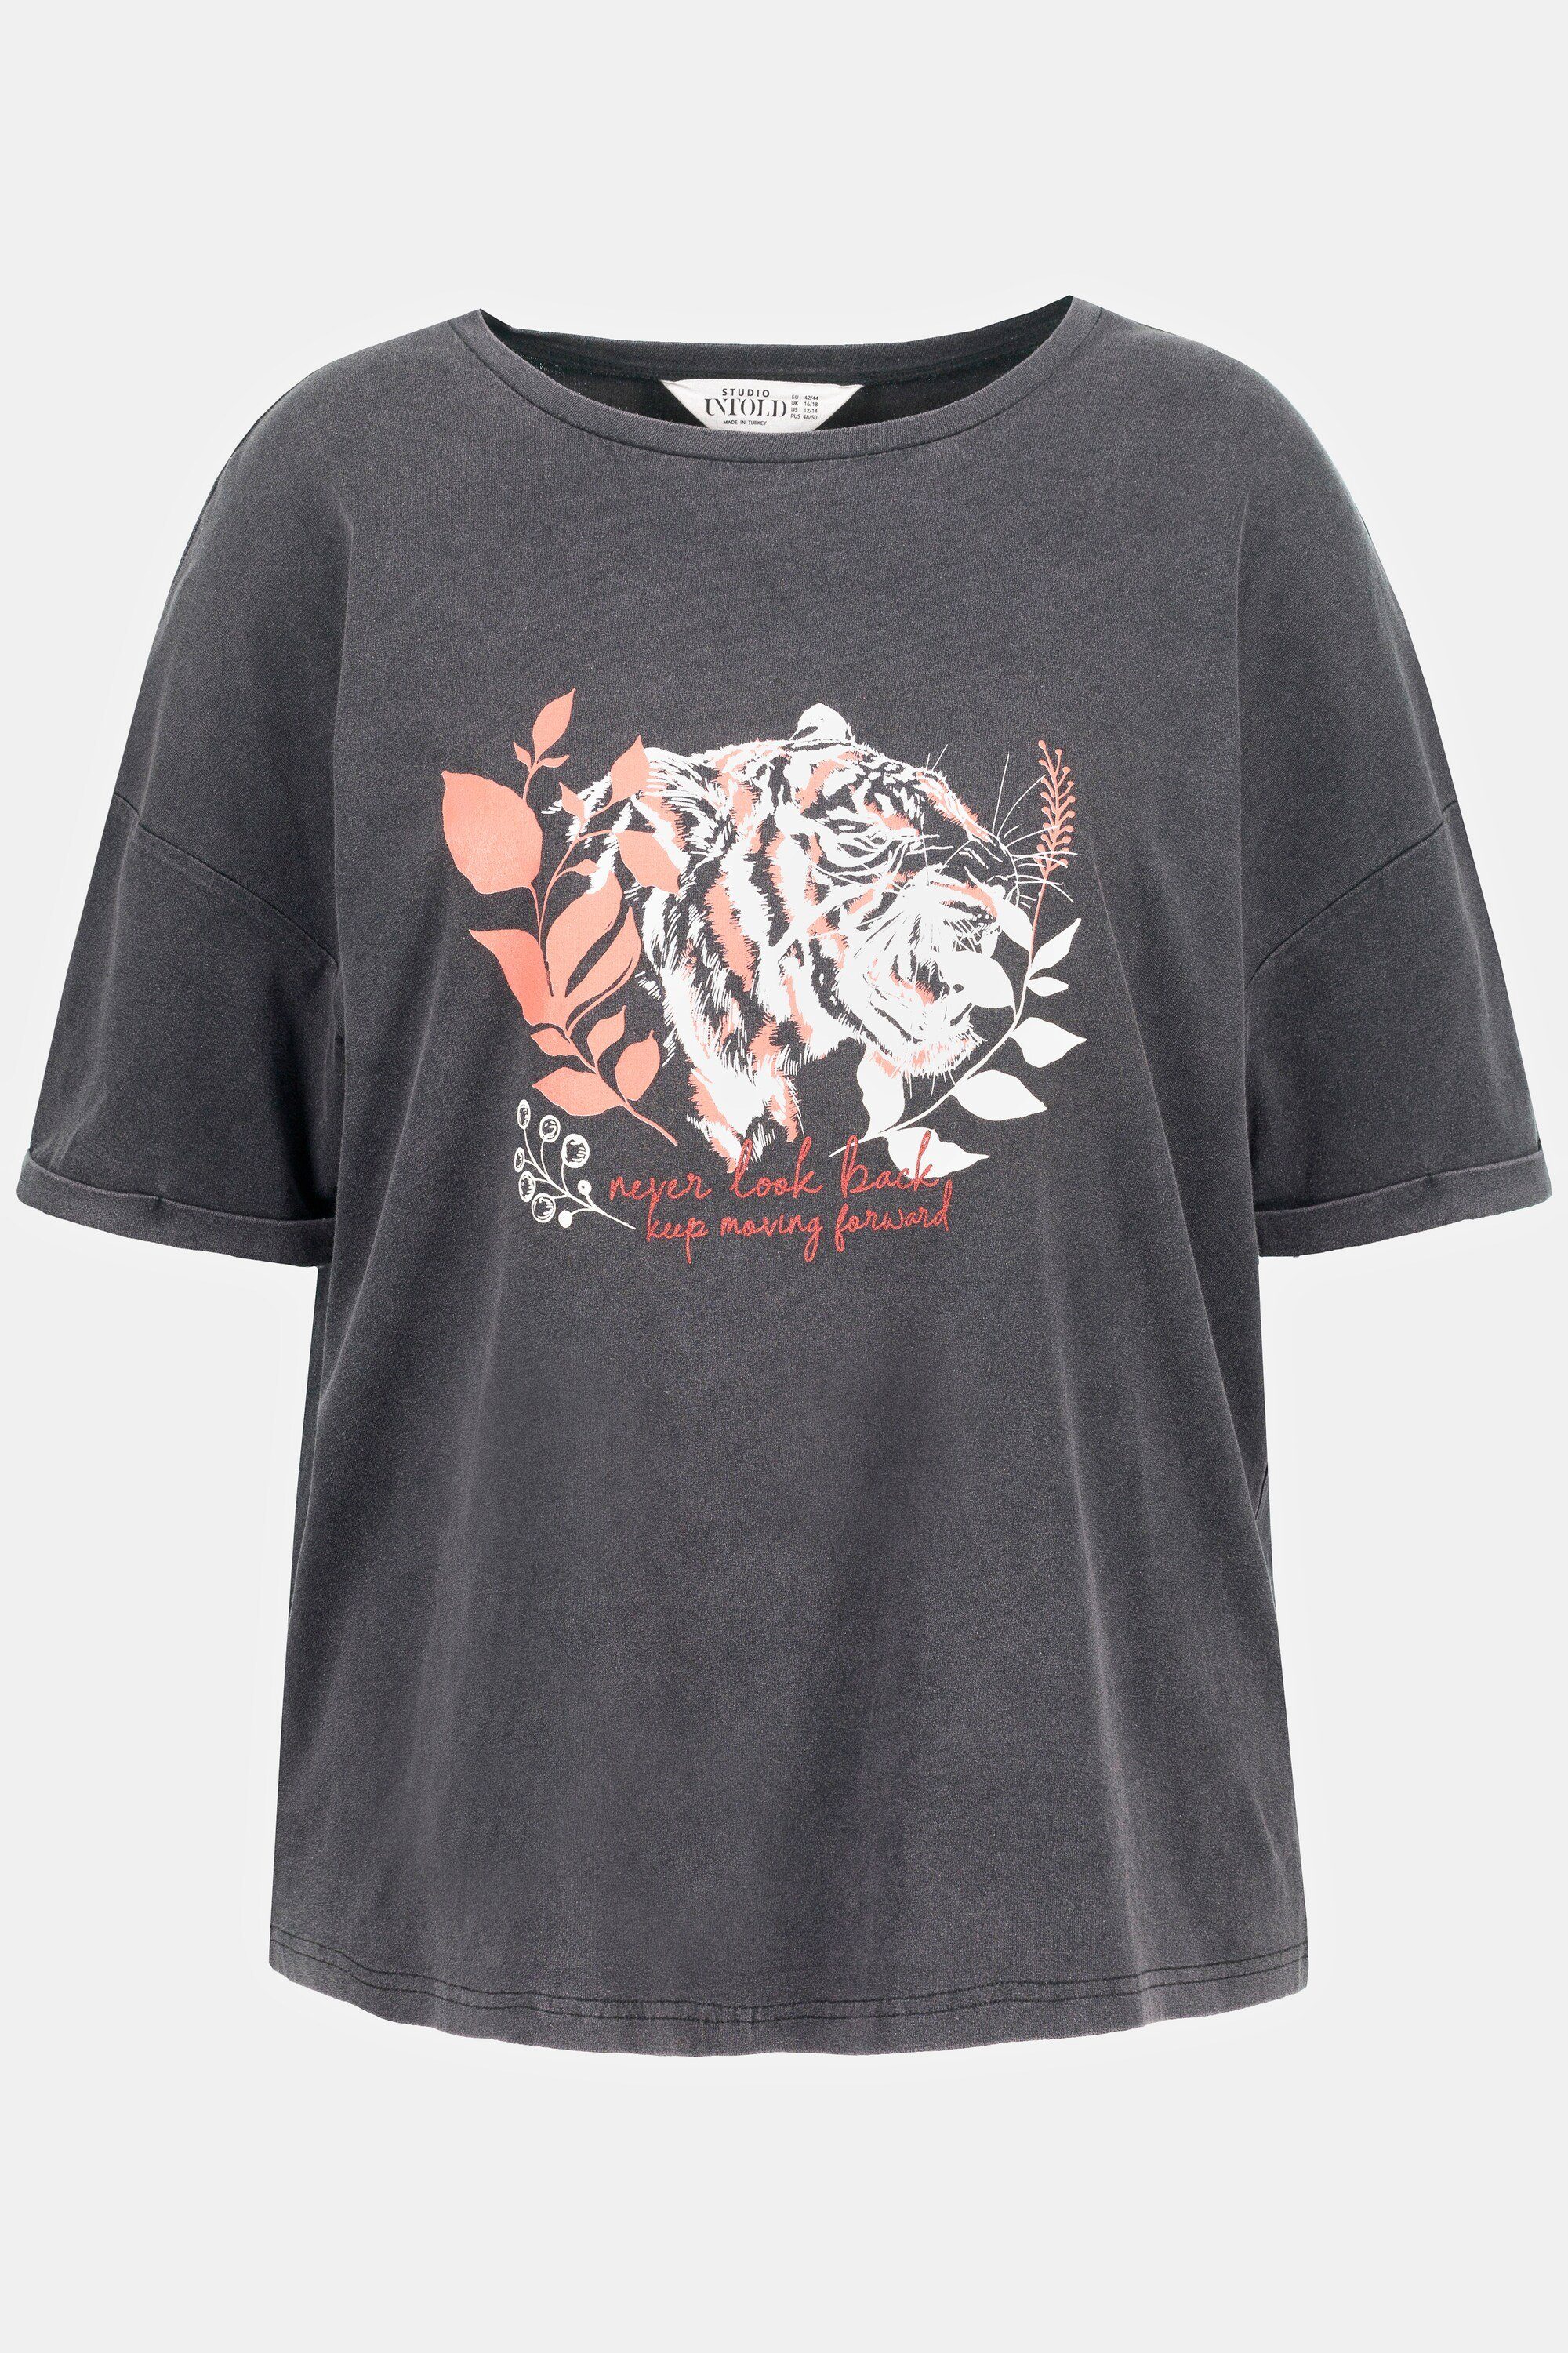 Rundhals oversized Motiv Tiger acid T-Shirt Studio Untold washed Longsleeve